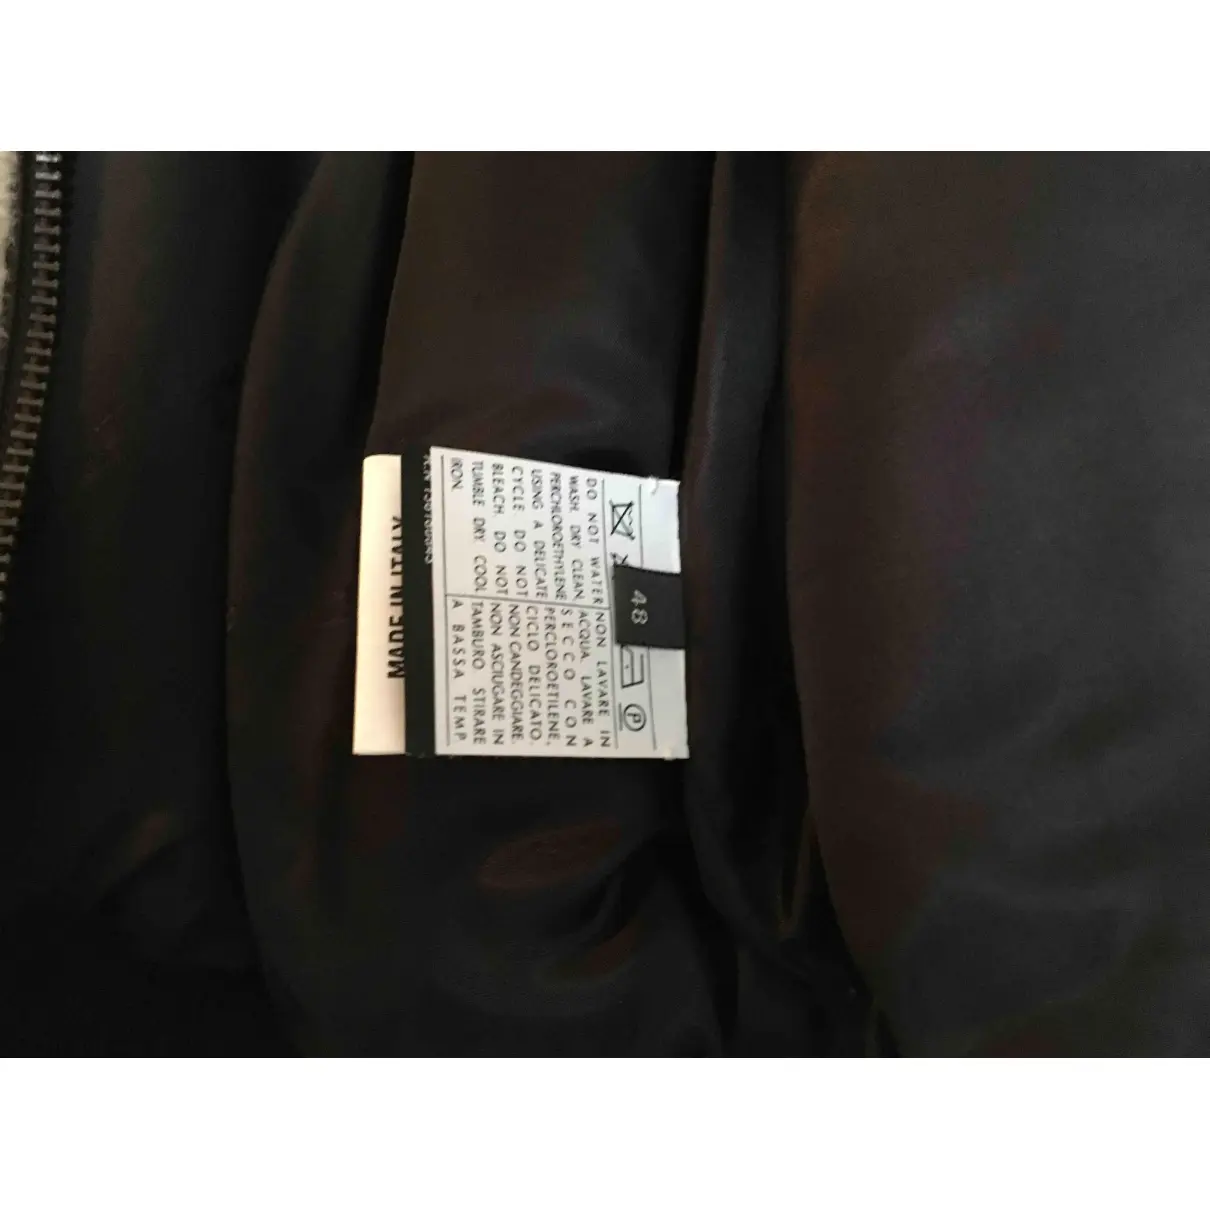 Buy Salvatore Ferragamo Jacket online